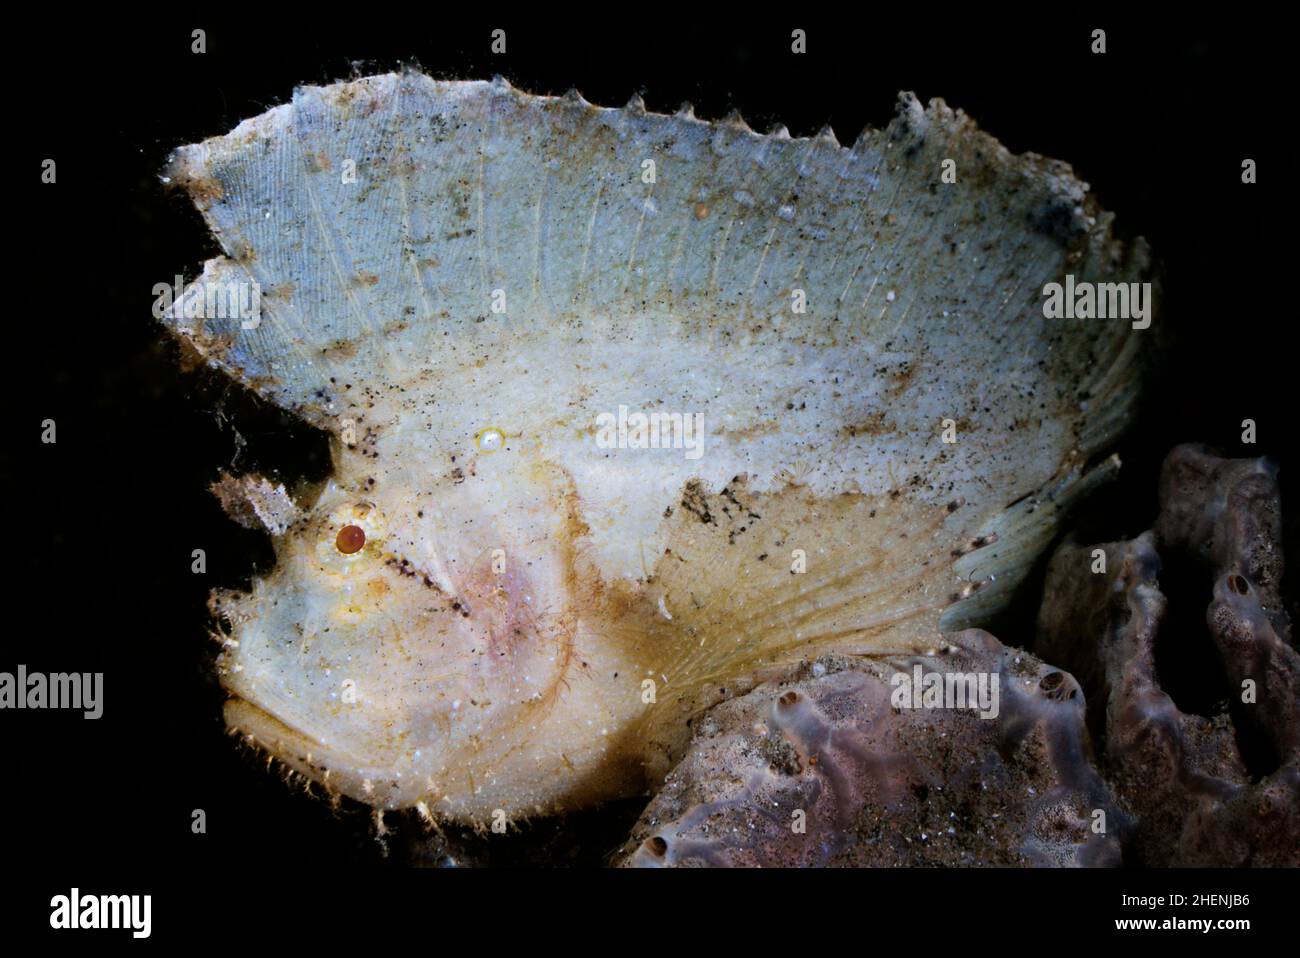 Taenianotus triacanthus, der Blattsorpionfisch oder Paperfisch, ist eine Art von Meeresfischen, das einzige Mitglied seiner Gattung, sitzt auf dem Schwamm. Stockfoto